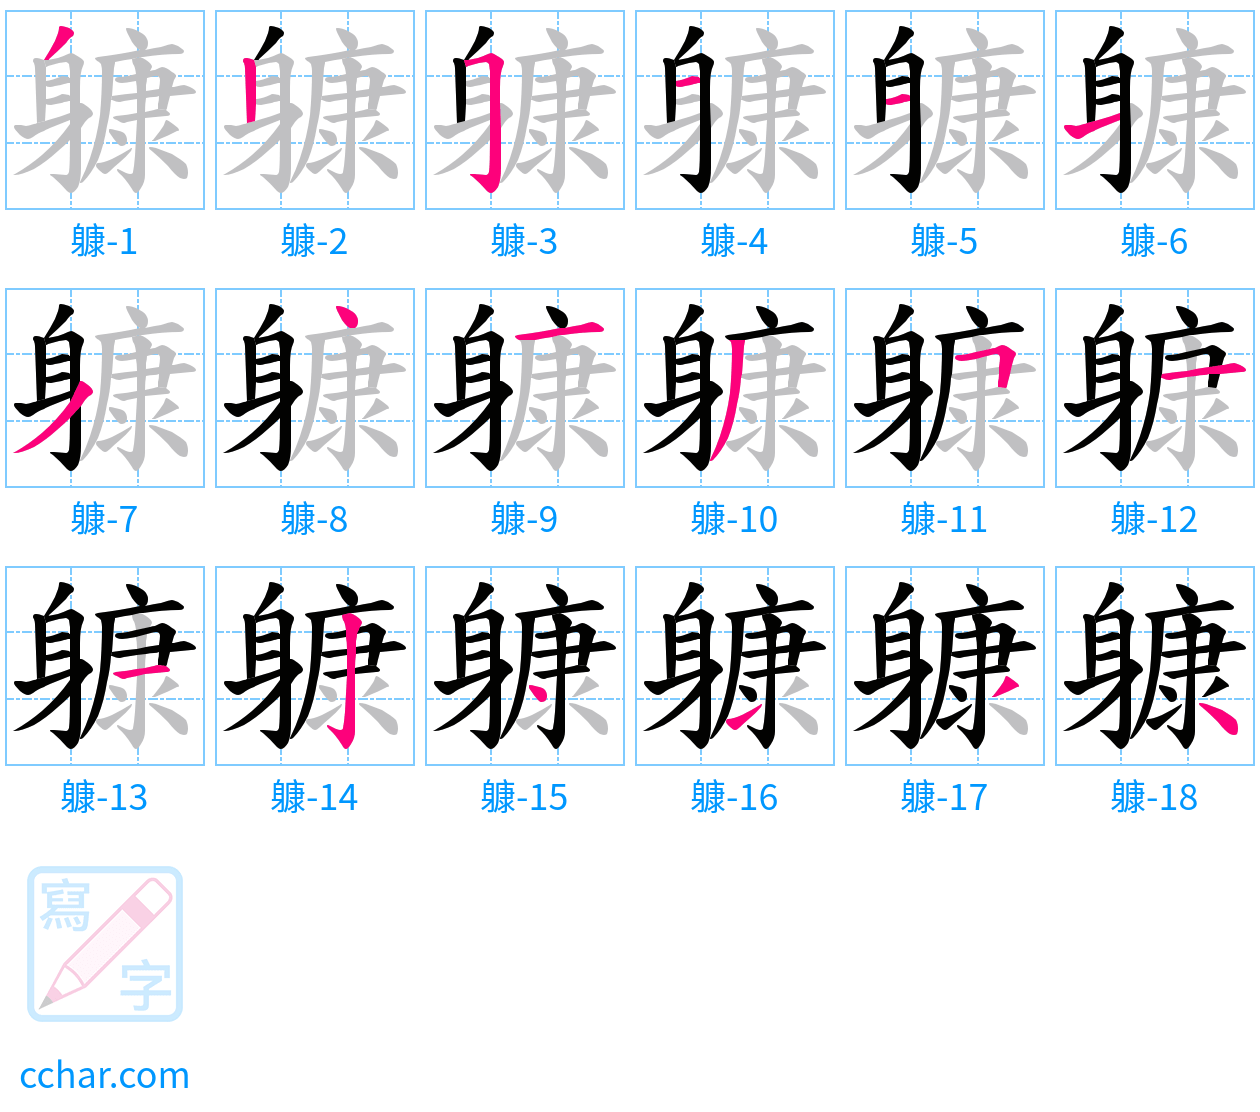 躿 stroke order step-by-step diagram